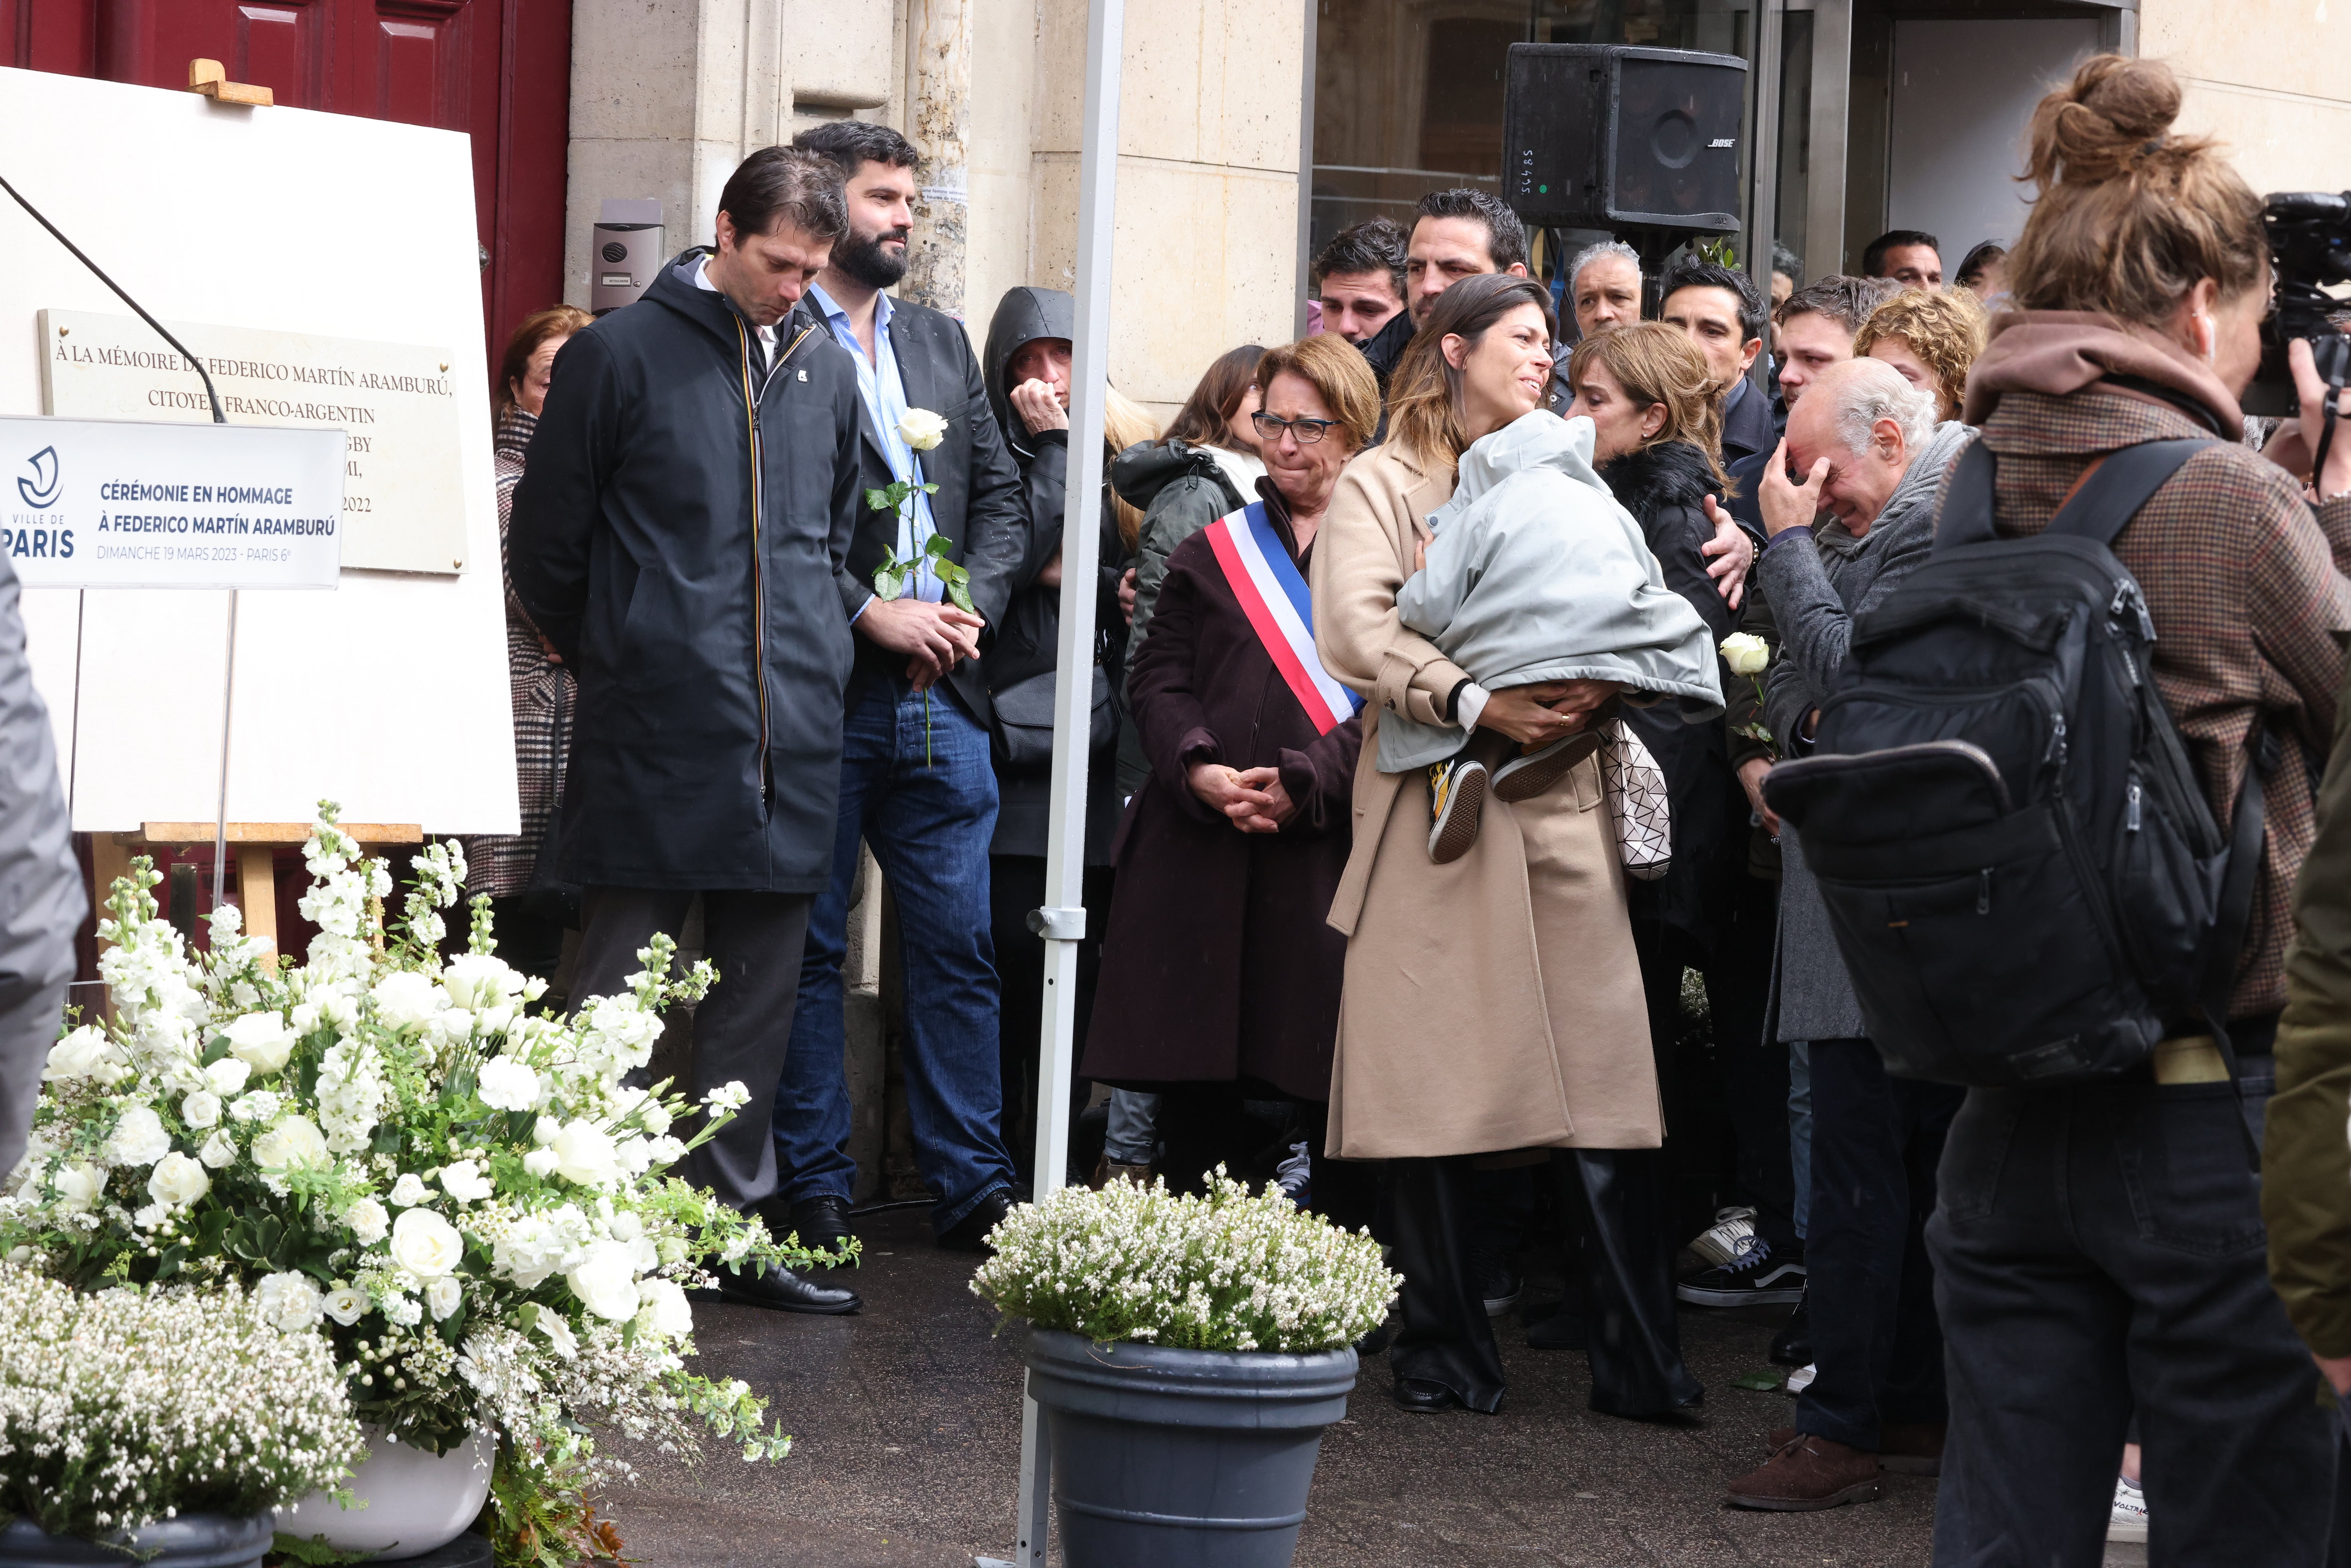 La femme et les parents de Federico Martin Aramburu étaient sur les lieux du drame, ce dimanche, pour rendre hommage au rugbyman tué un an plus tôt. LP/Olivier Lejeune